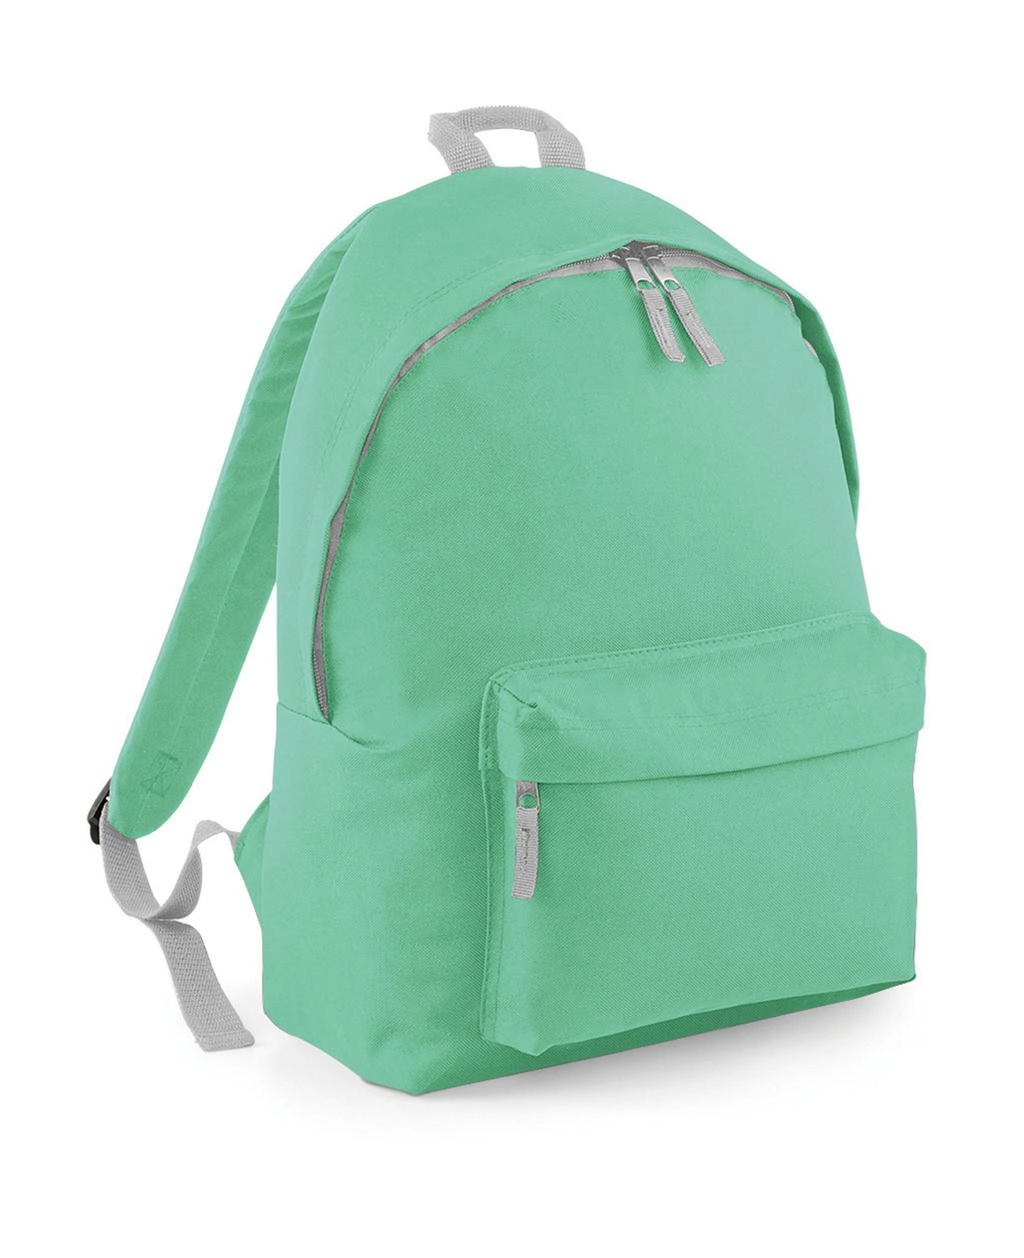 Original Fashion Backpack zum Besticken und Bedrucken in der Farbe Mint Green/Light Grey mit Ihren Logo, Schriftzug oder Motiv.